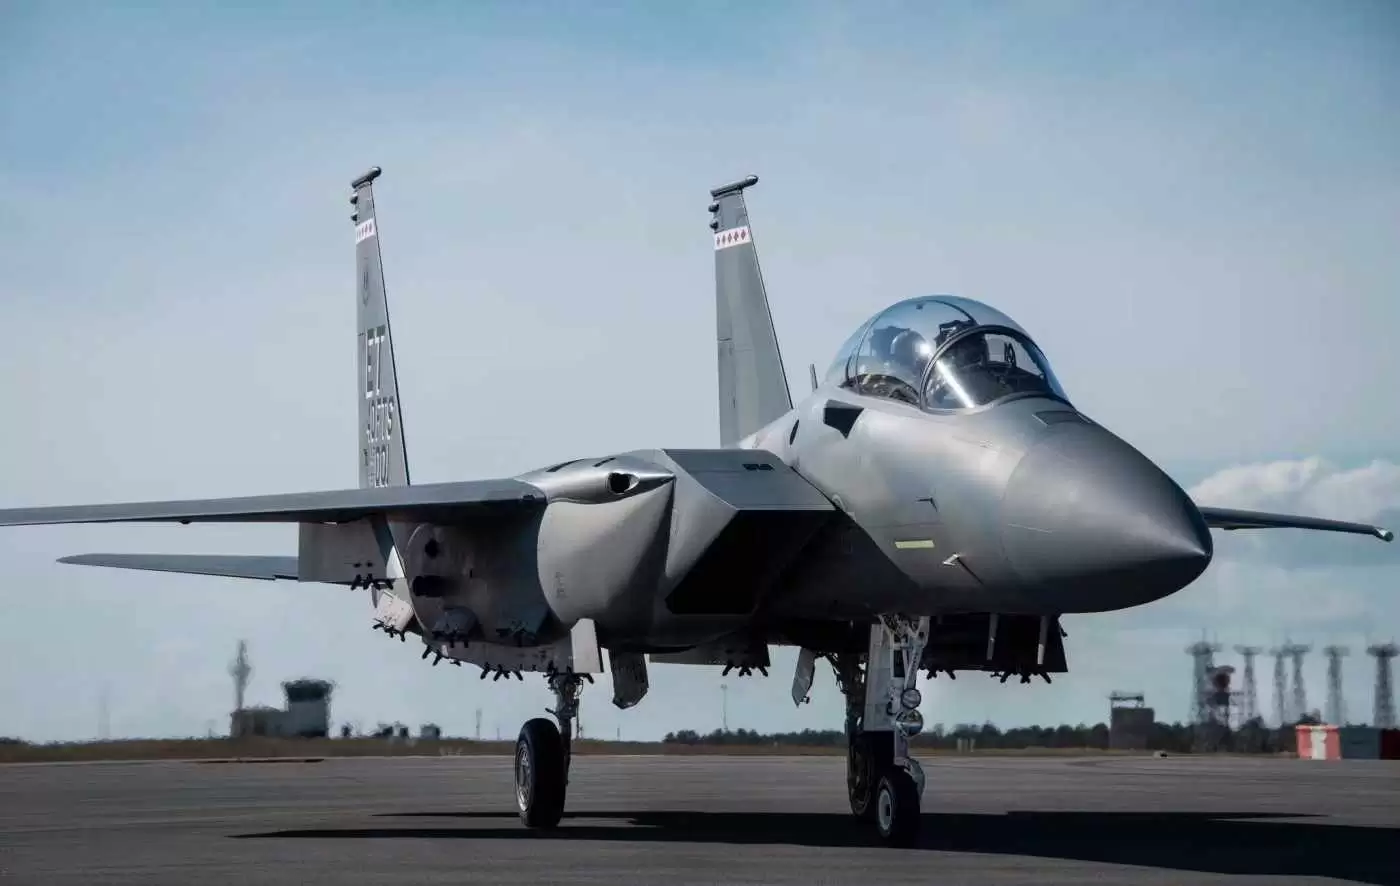 جنگنده f-15ex eagle ii چه تفاوت هایی با نسخه اورجینال f-15 دارد؟